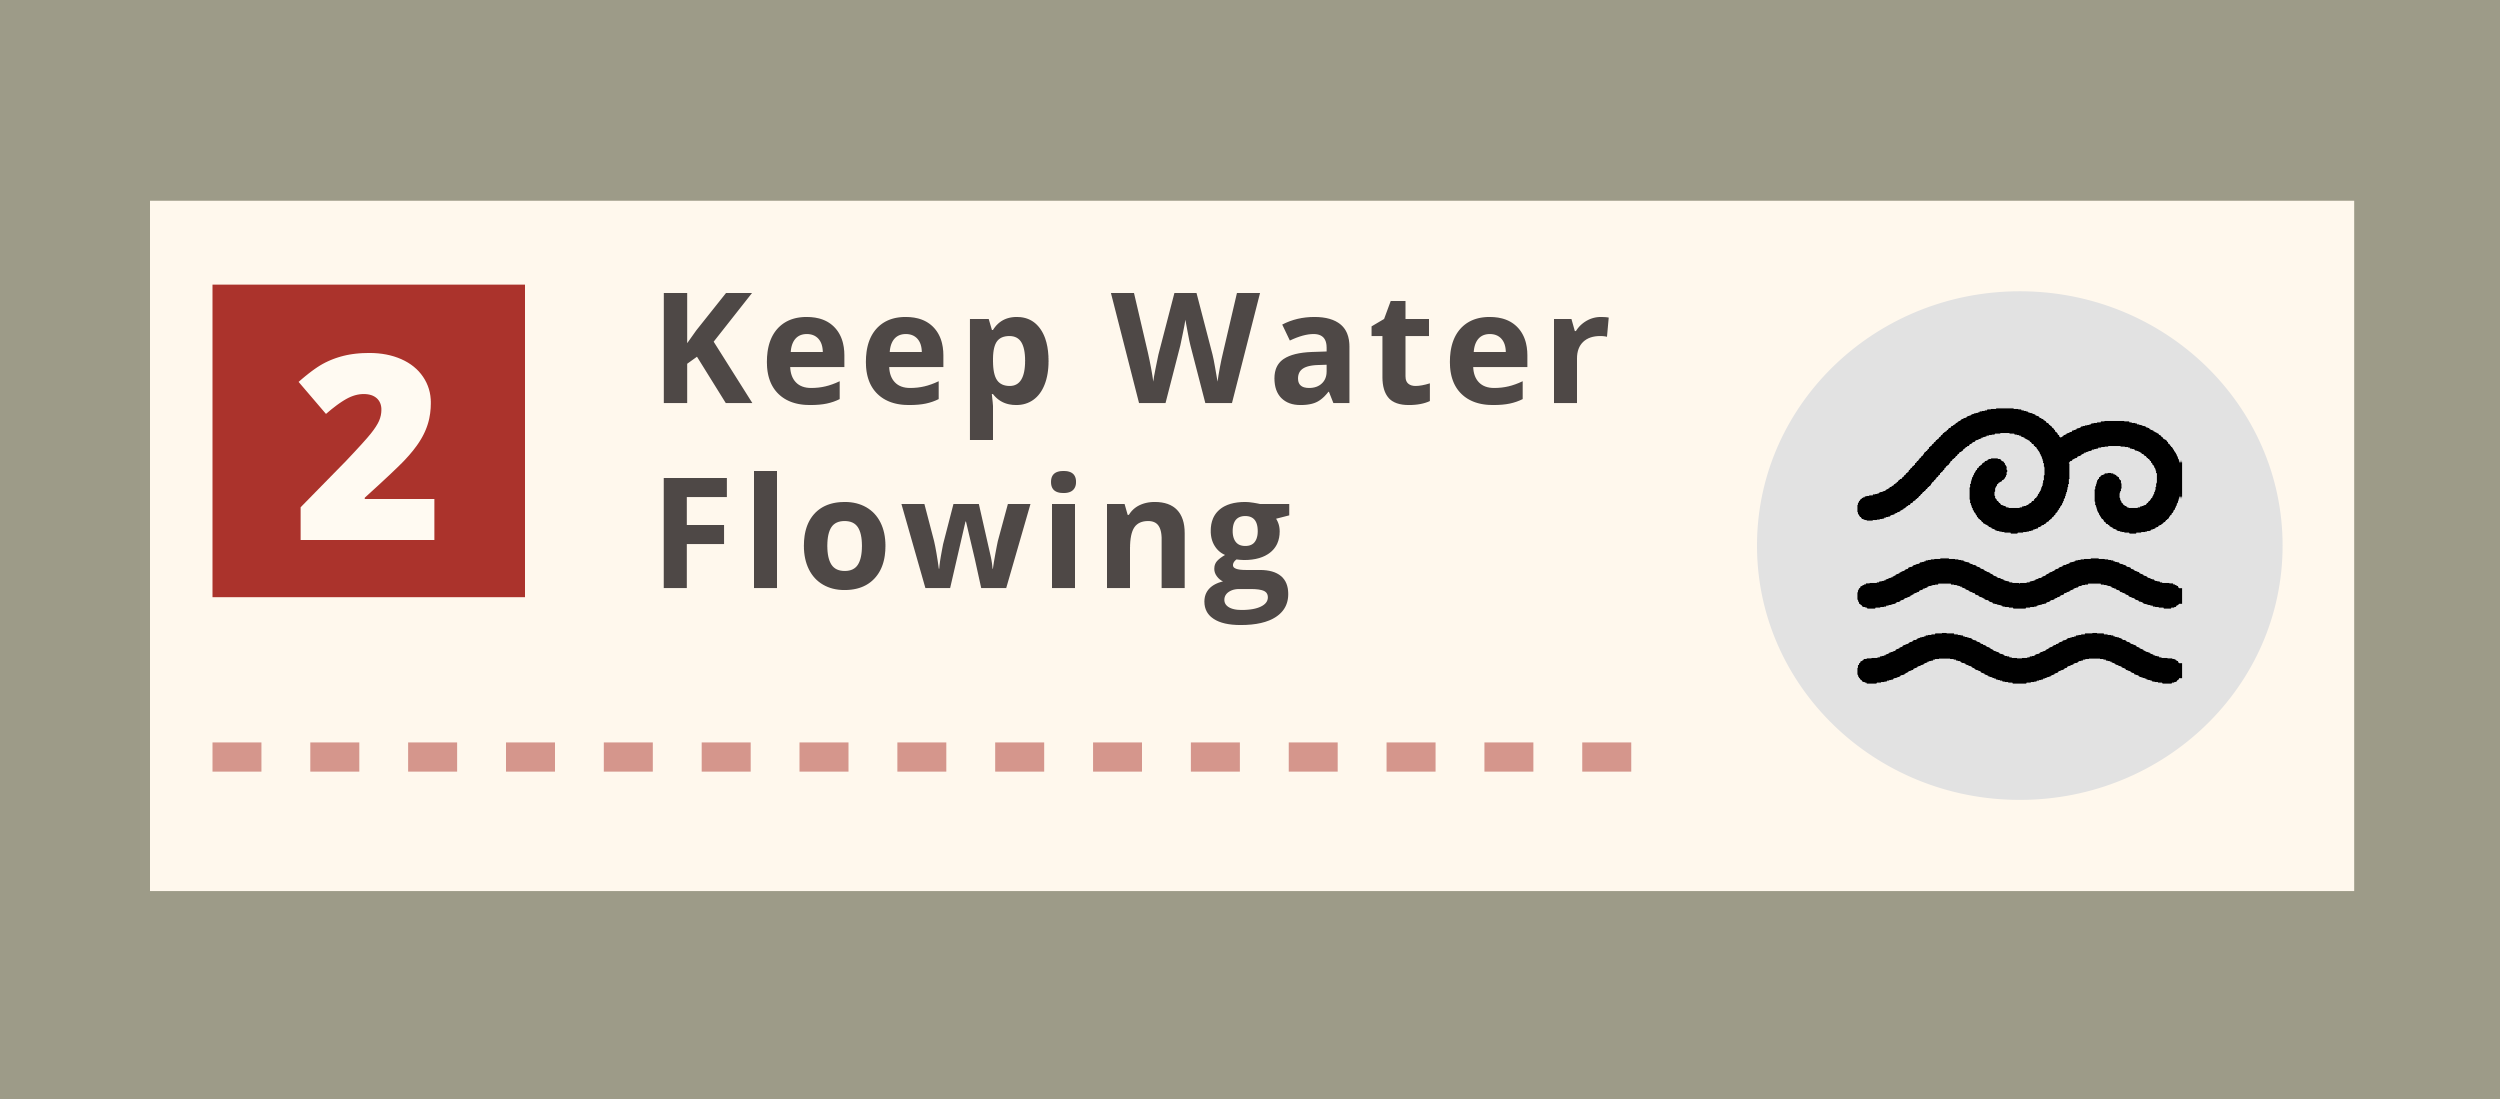 Keep water flowing